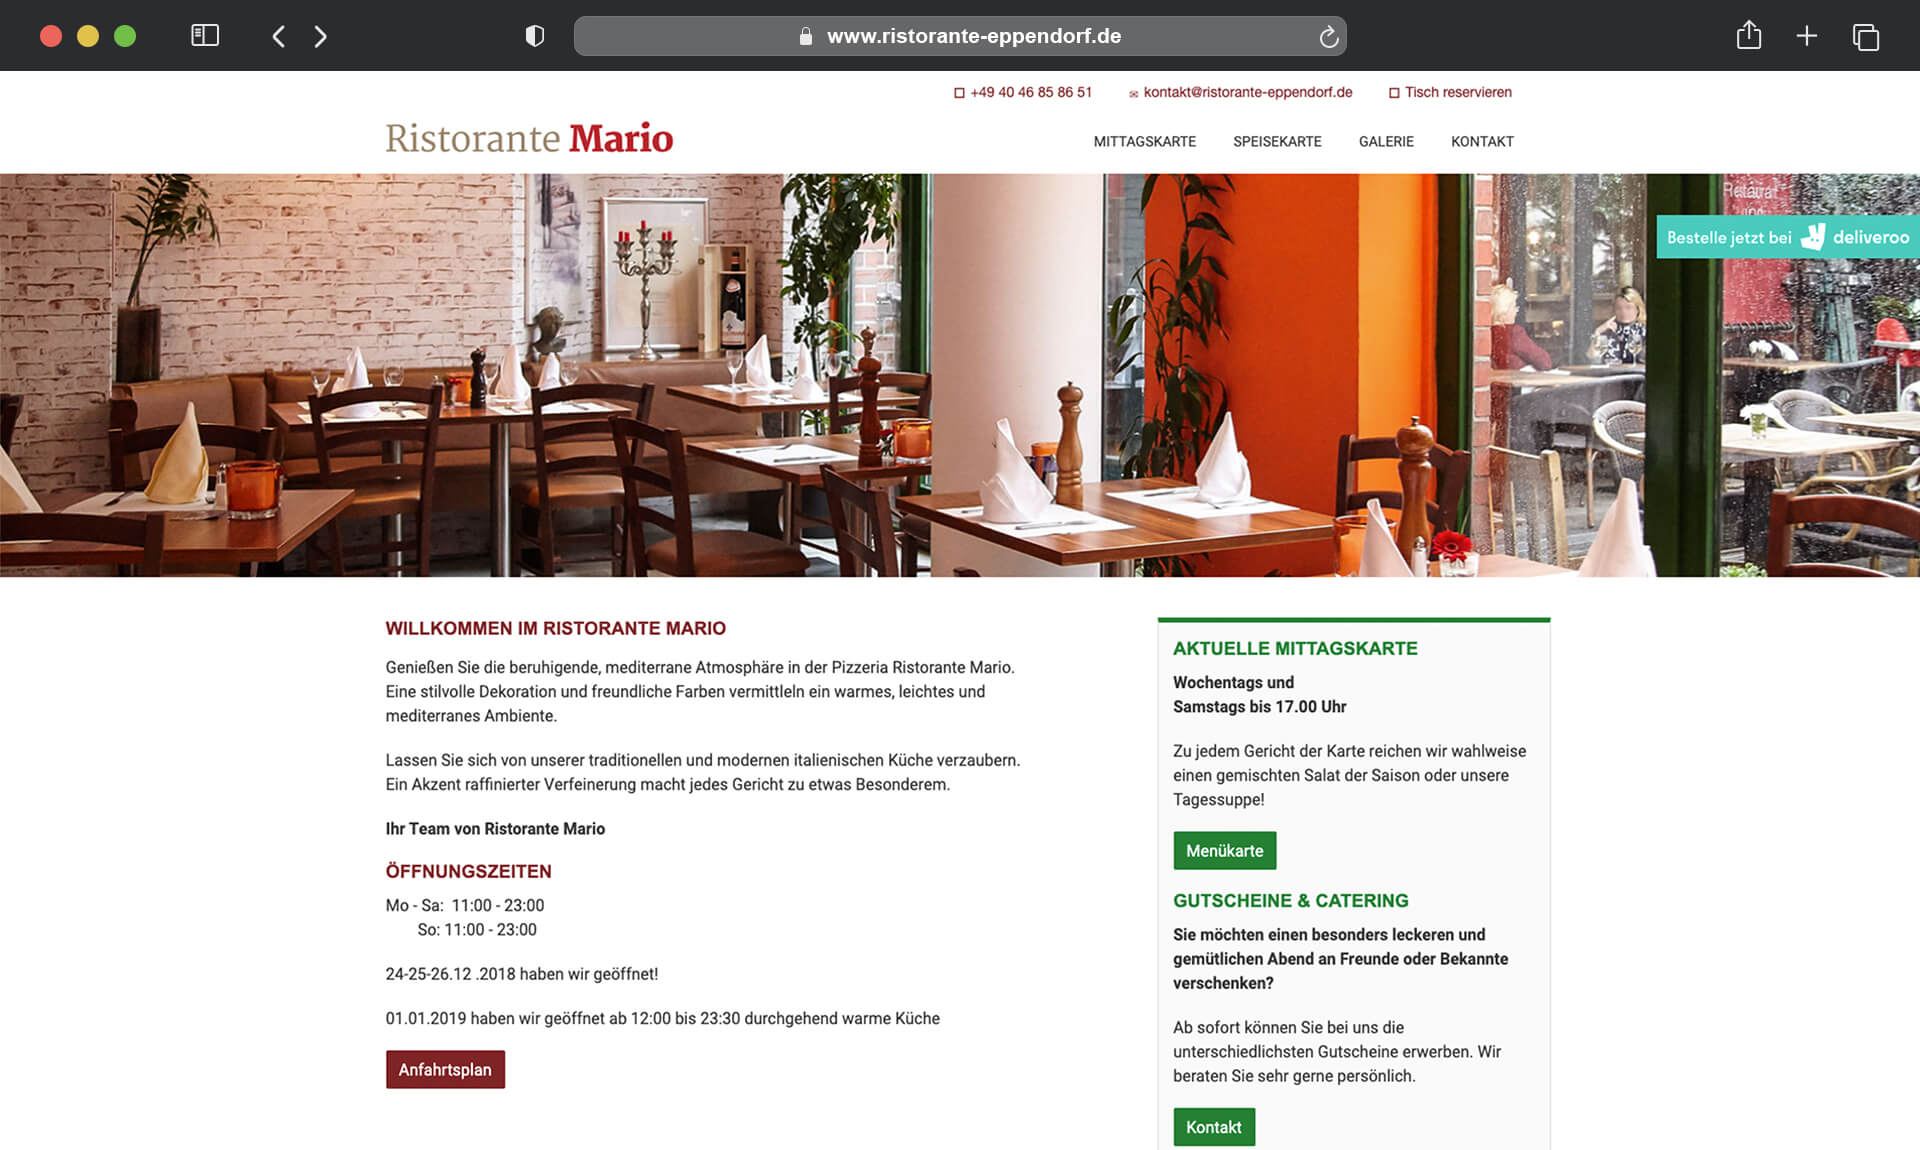 ristorante mario referenz vorher alte website xperients